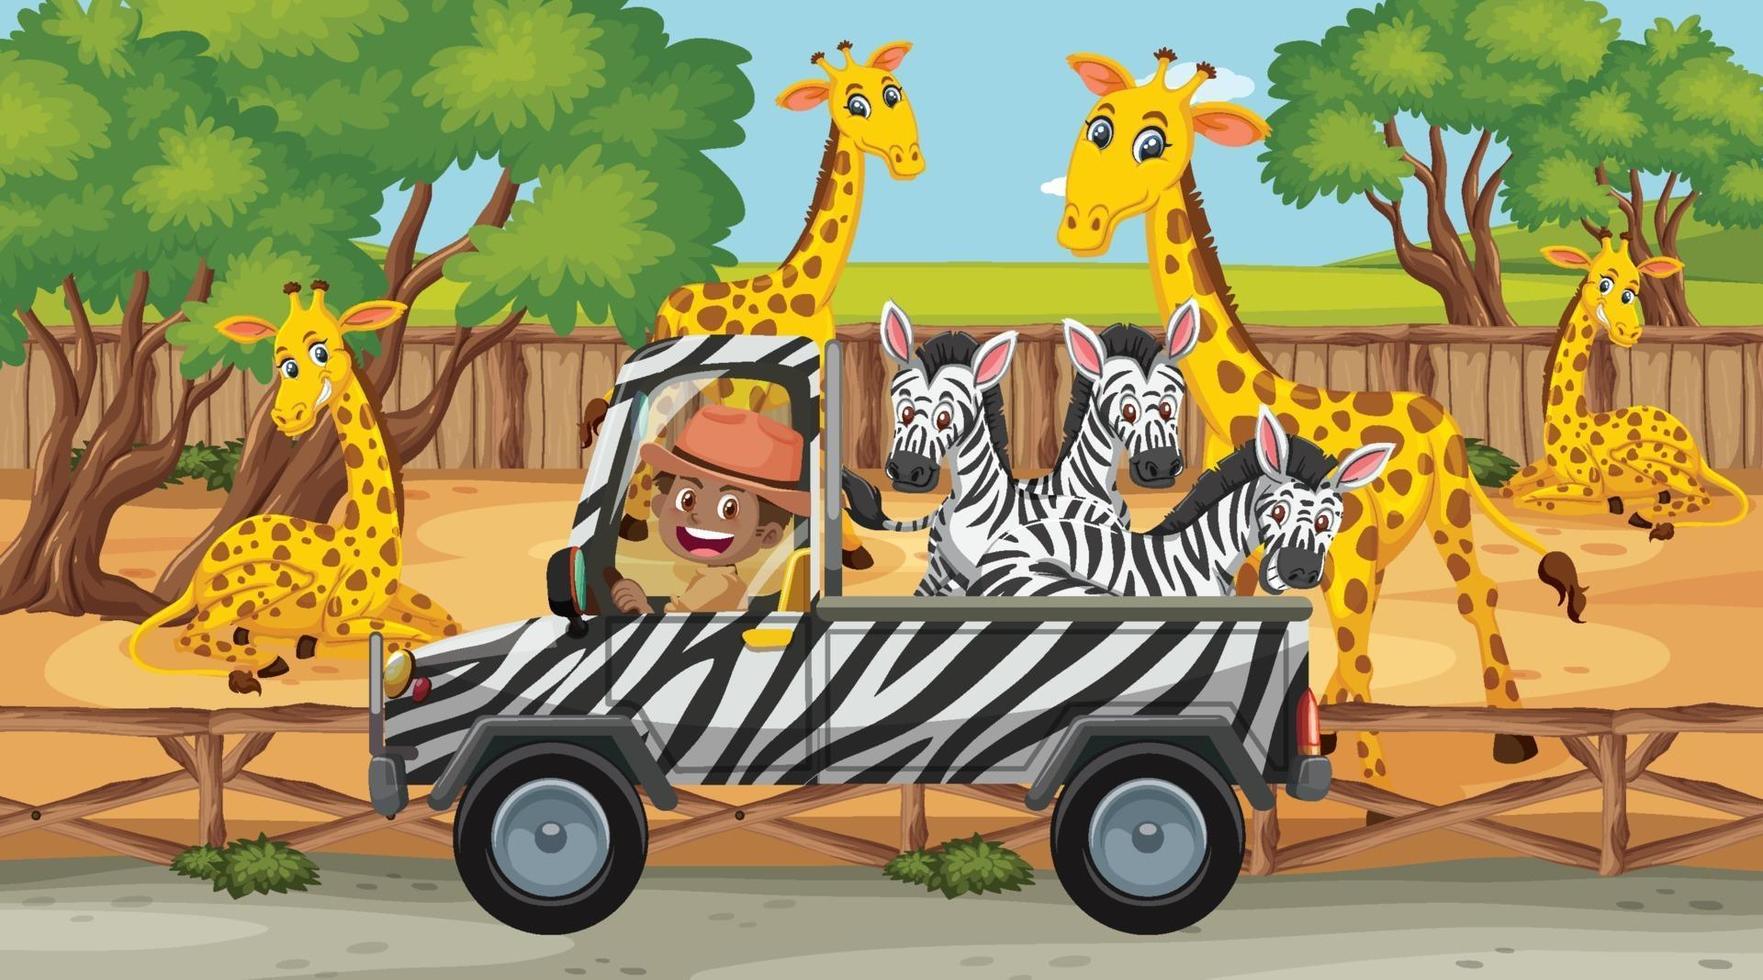 cena de safári com muitas girafas e zebras no caminhão vetor